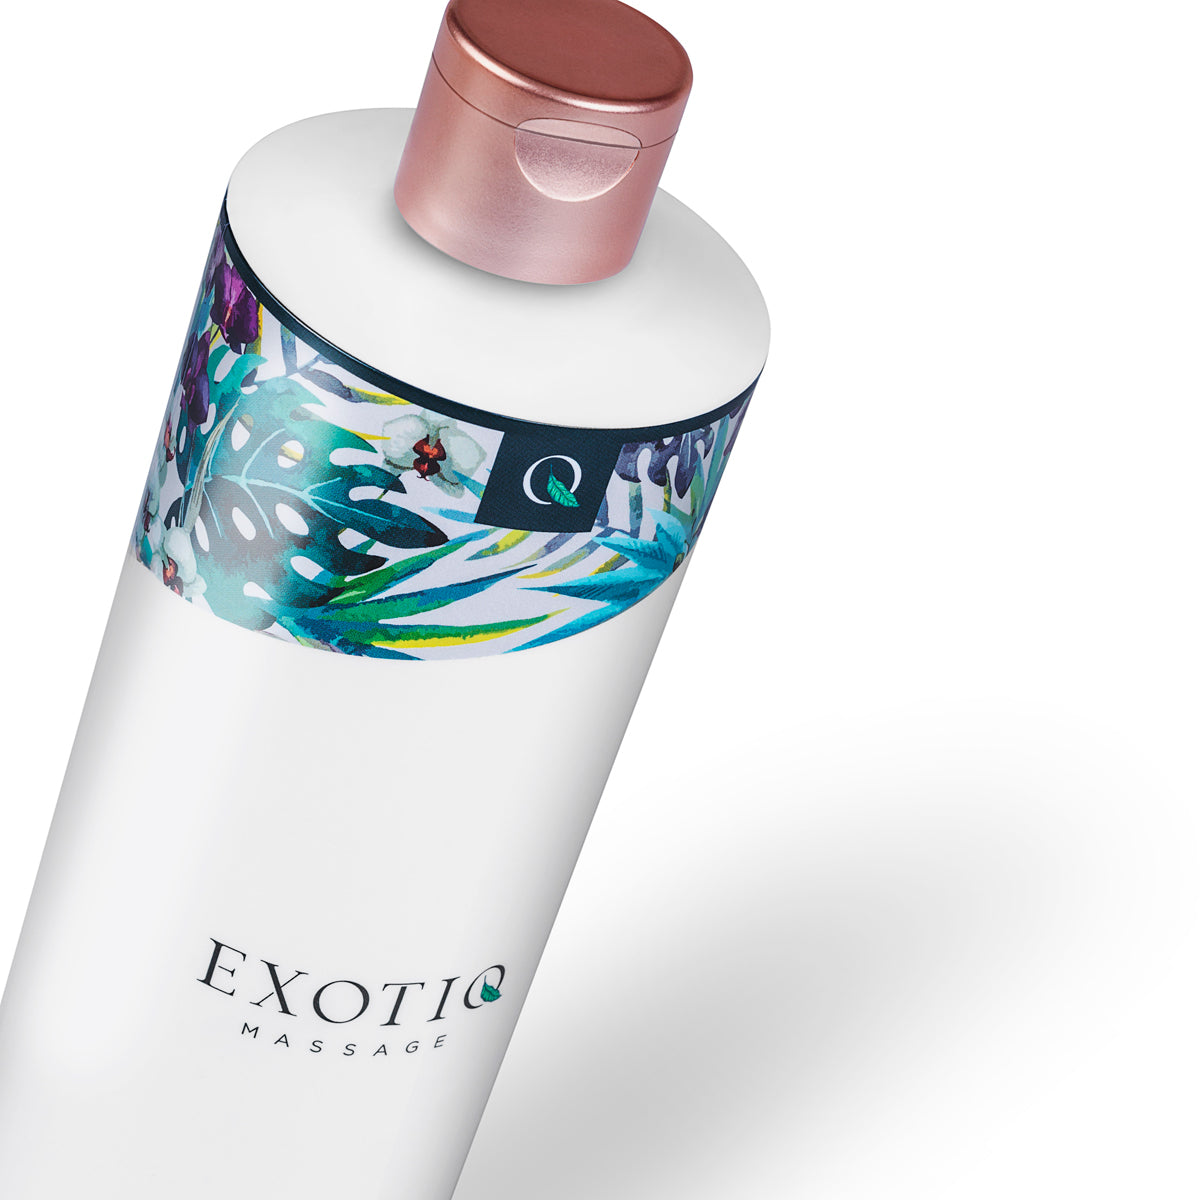 Luxe massage Olie van het merk Exotiq. Exotiq Body To Body Oil is perfect voor body to body massages. Producten van Exotiq koop je bij Flavourez